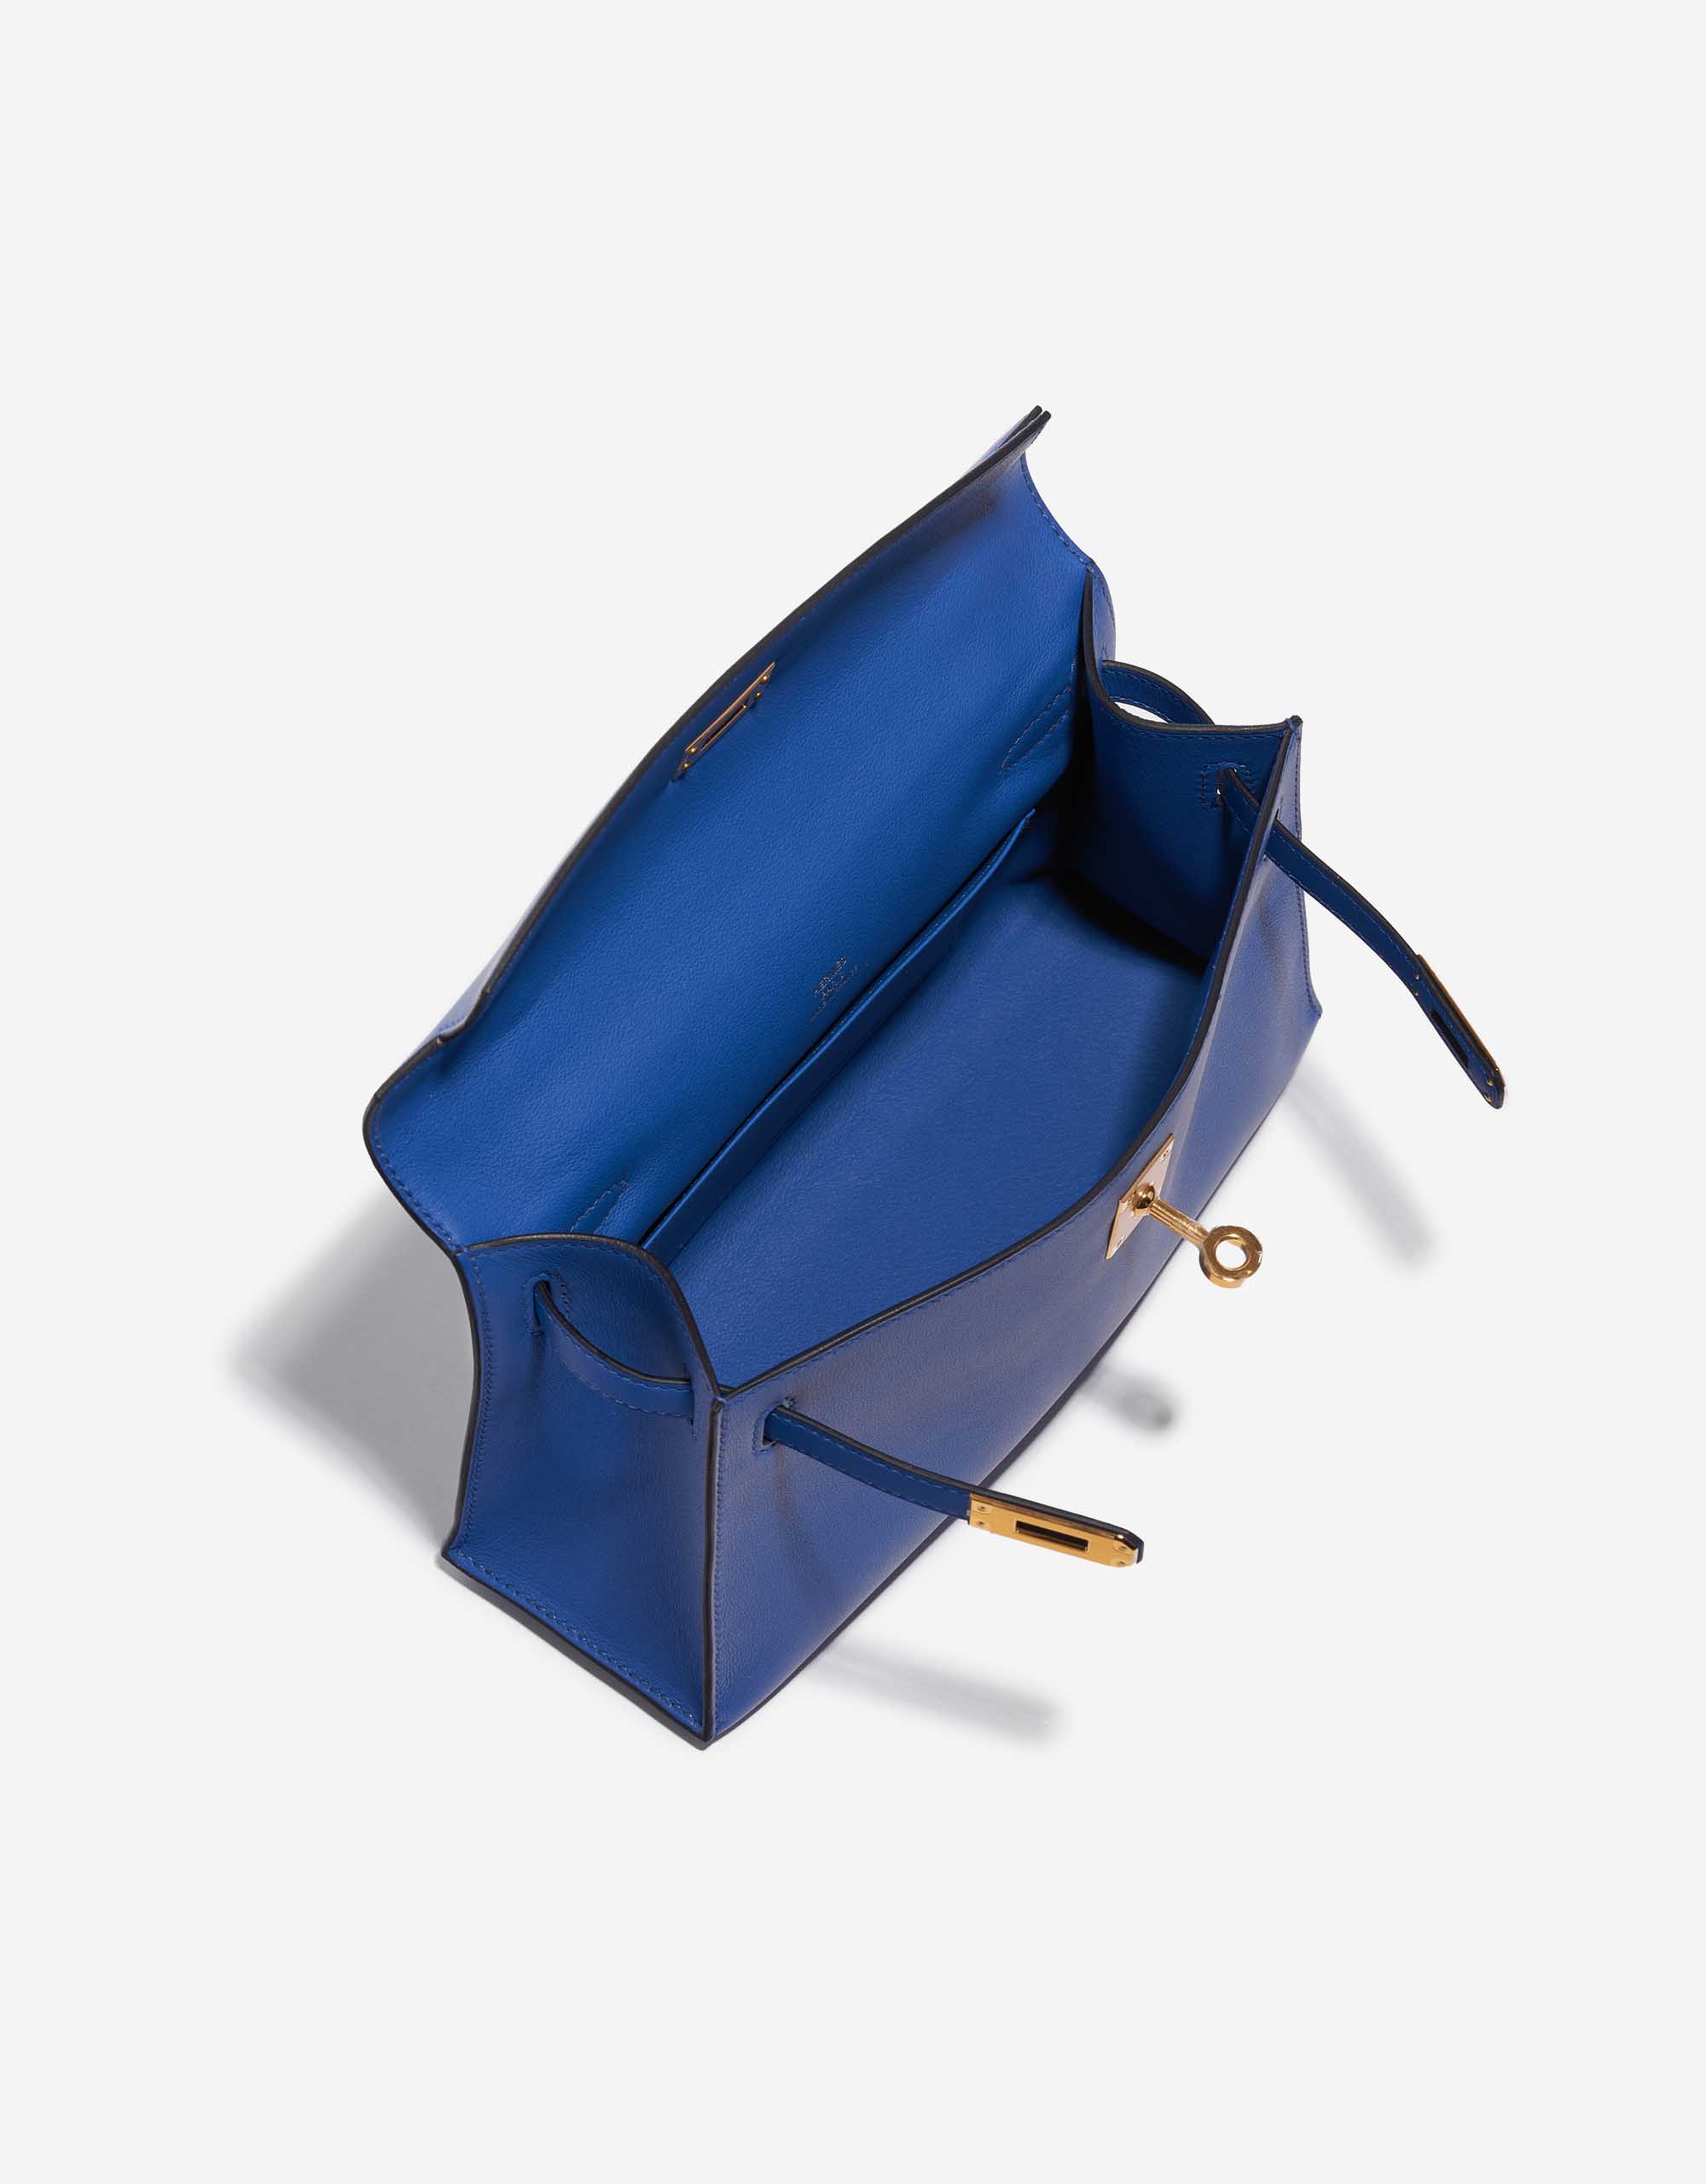 Sac Hermès d'occasion Kelly Pochette Swift Bleu de France Bleu Intérieur | Vendez votre sac de créateur sur Saclab.com